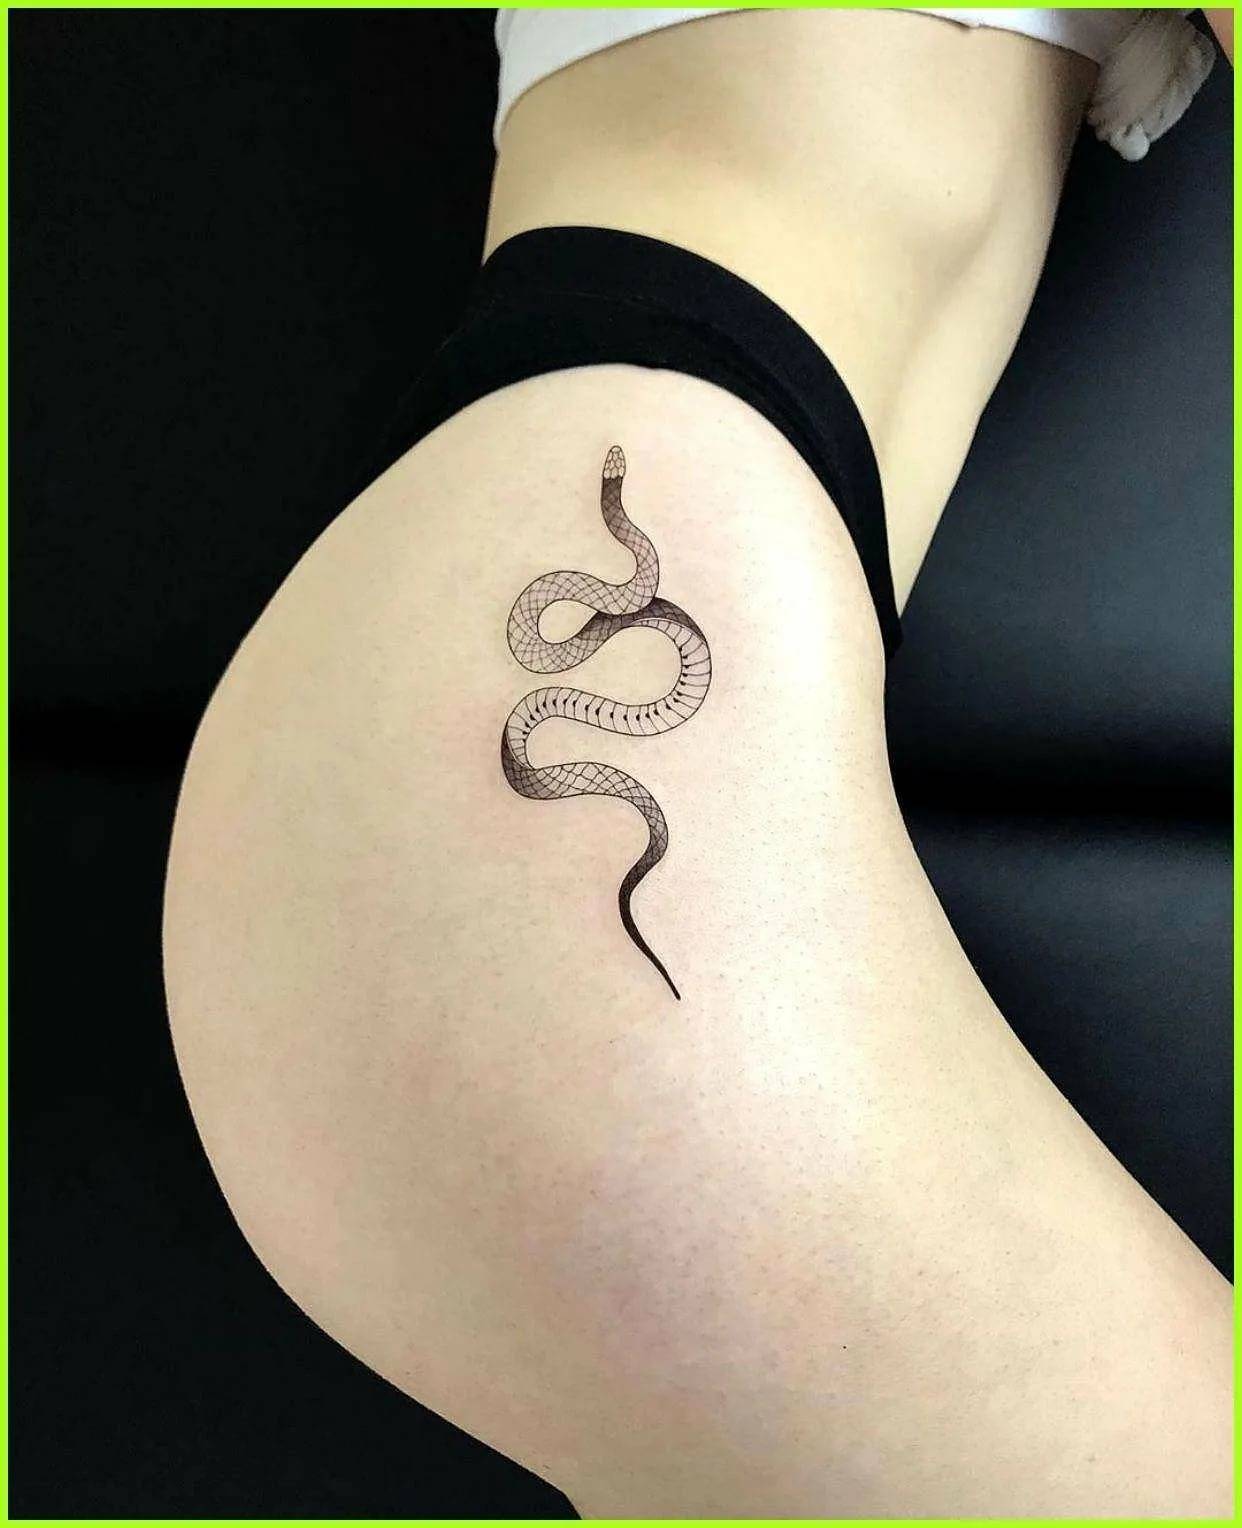 Татуировки змей на ноге